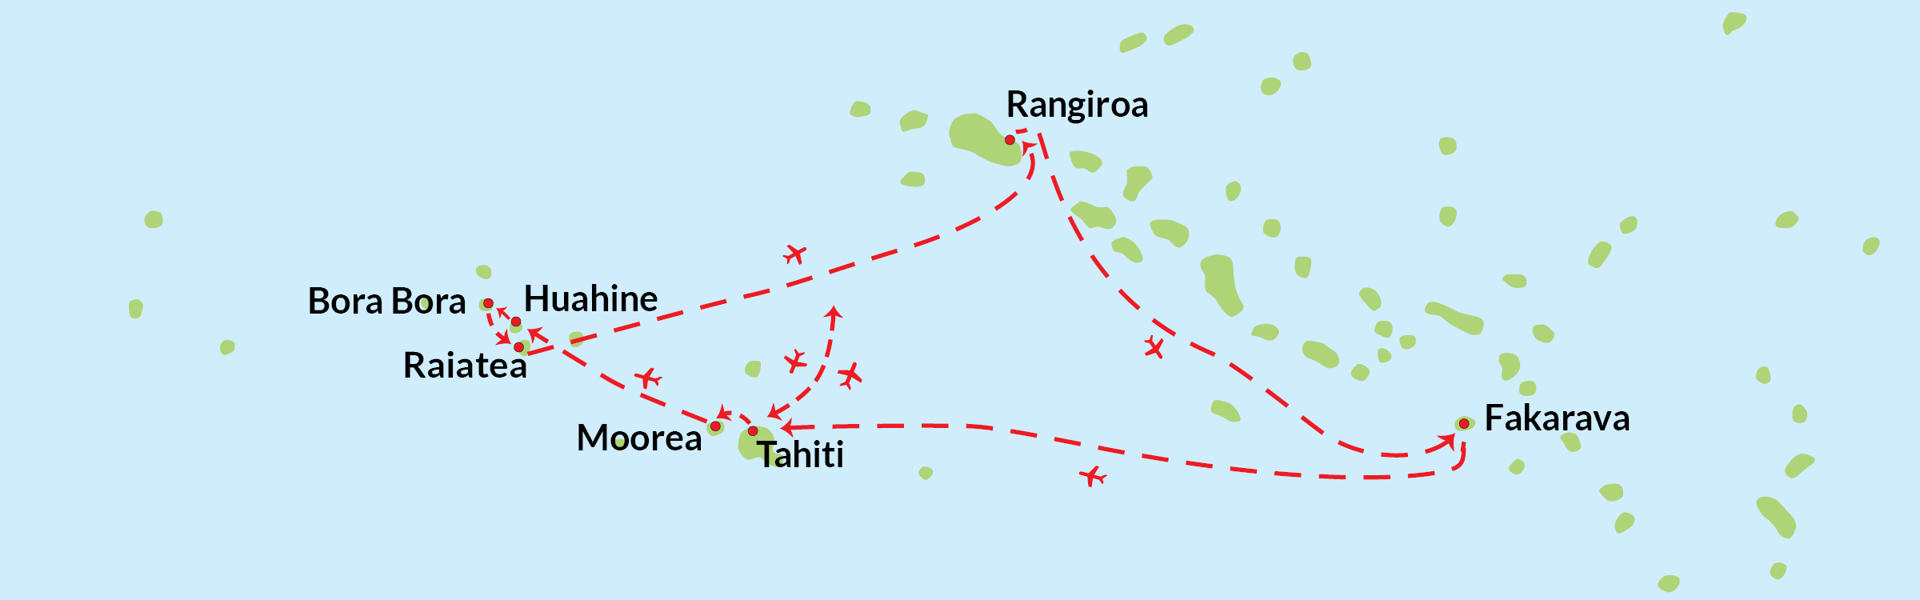 Øyhopping i Fransk Polynesia - Reiserute